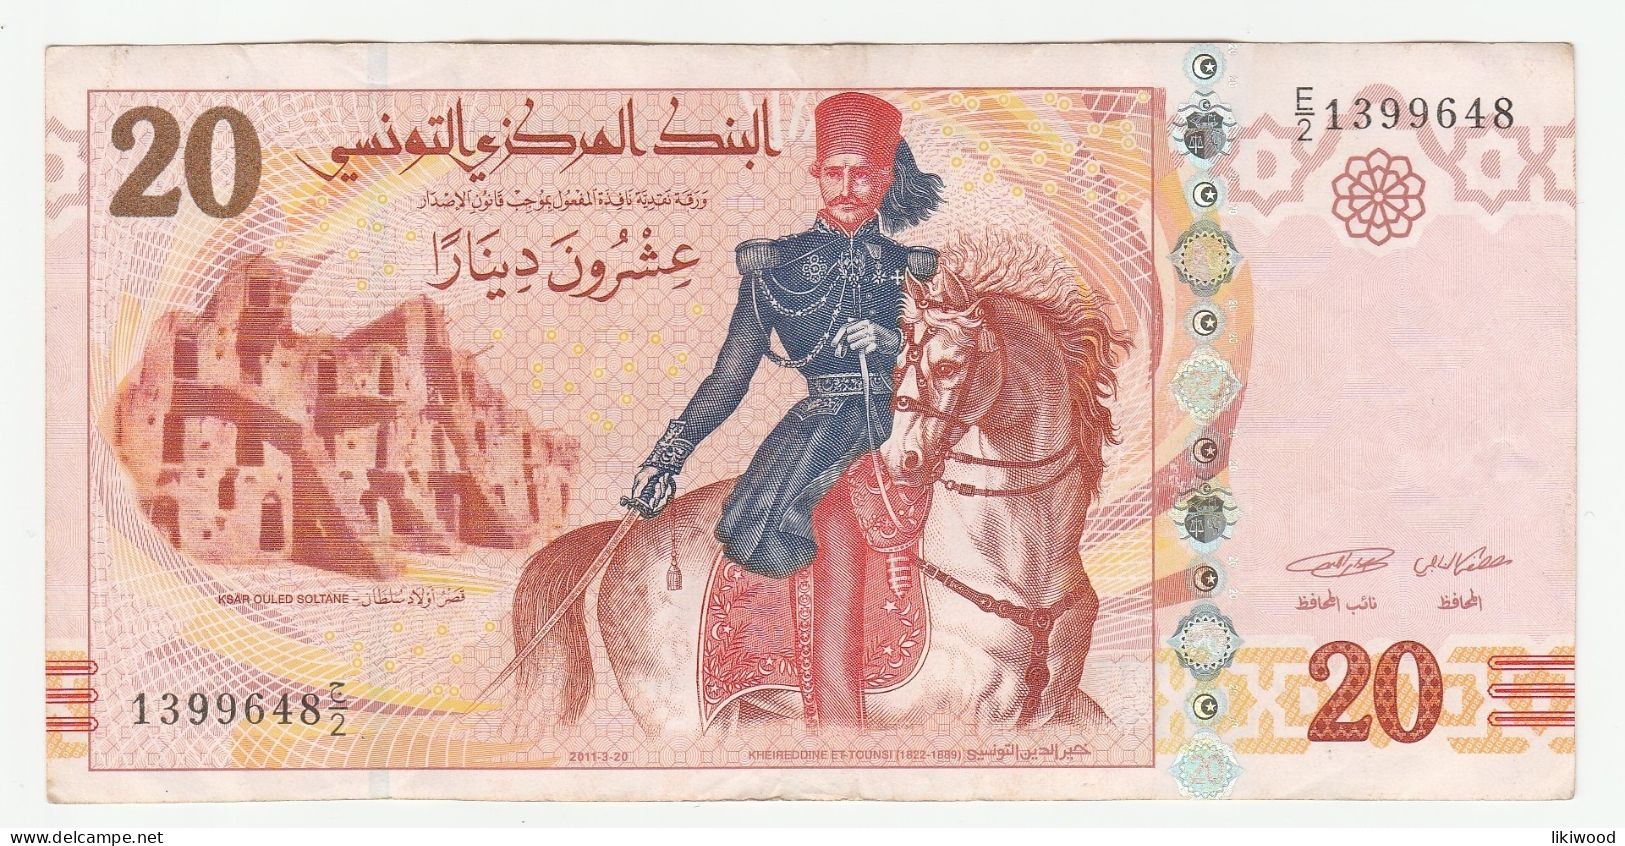 20 Dinars - 2011 - Tunisia - Khaireddine Et-Tounsi (1822-1889) Ksar Ouled Soltane - L'École Sadiki (error) - Tunisia